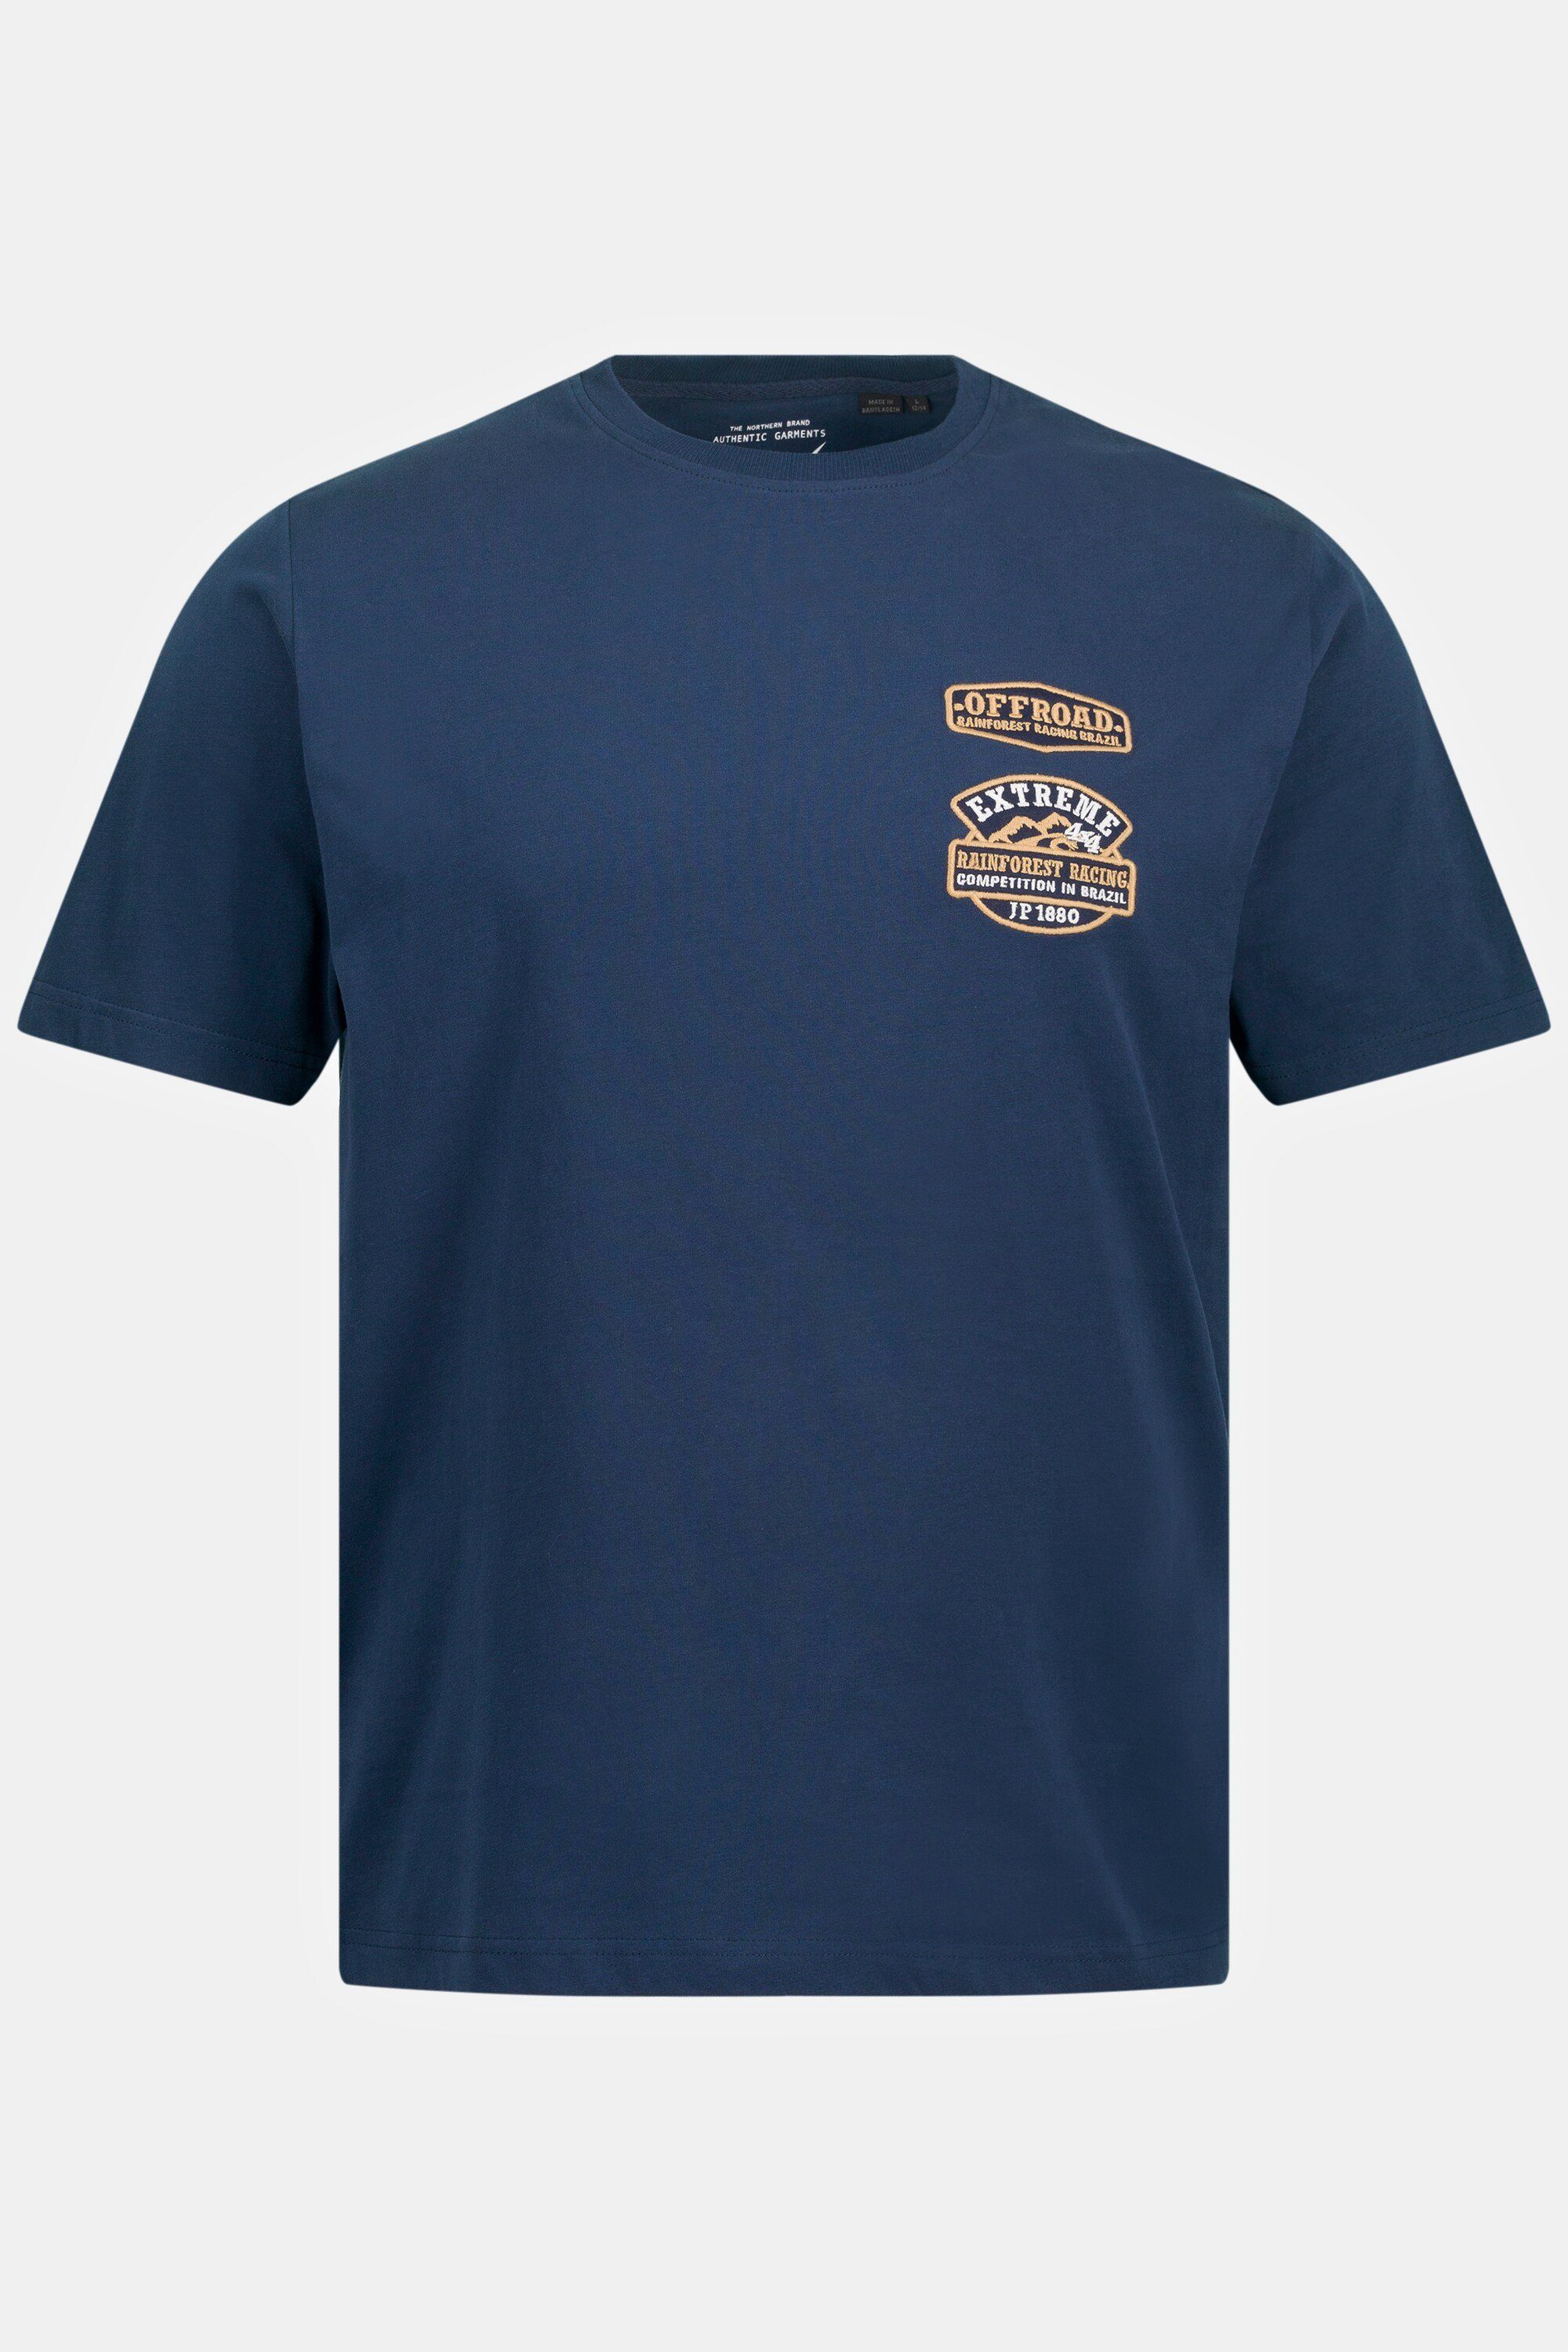 JP1880 T-Shirt T-Shirt Halbarm Badges Rundhals